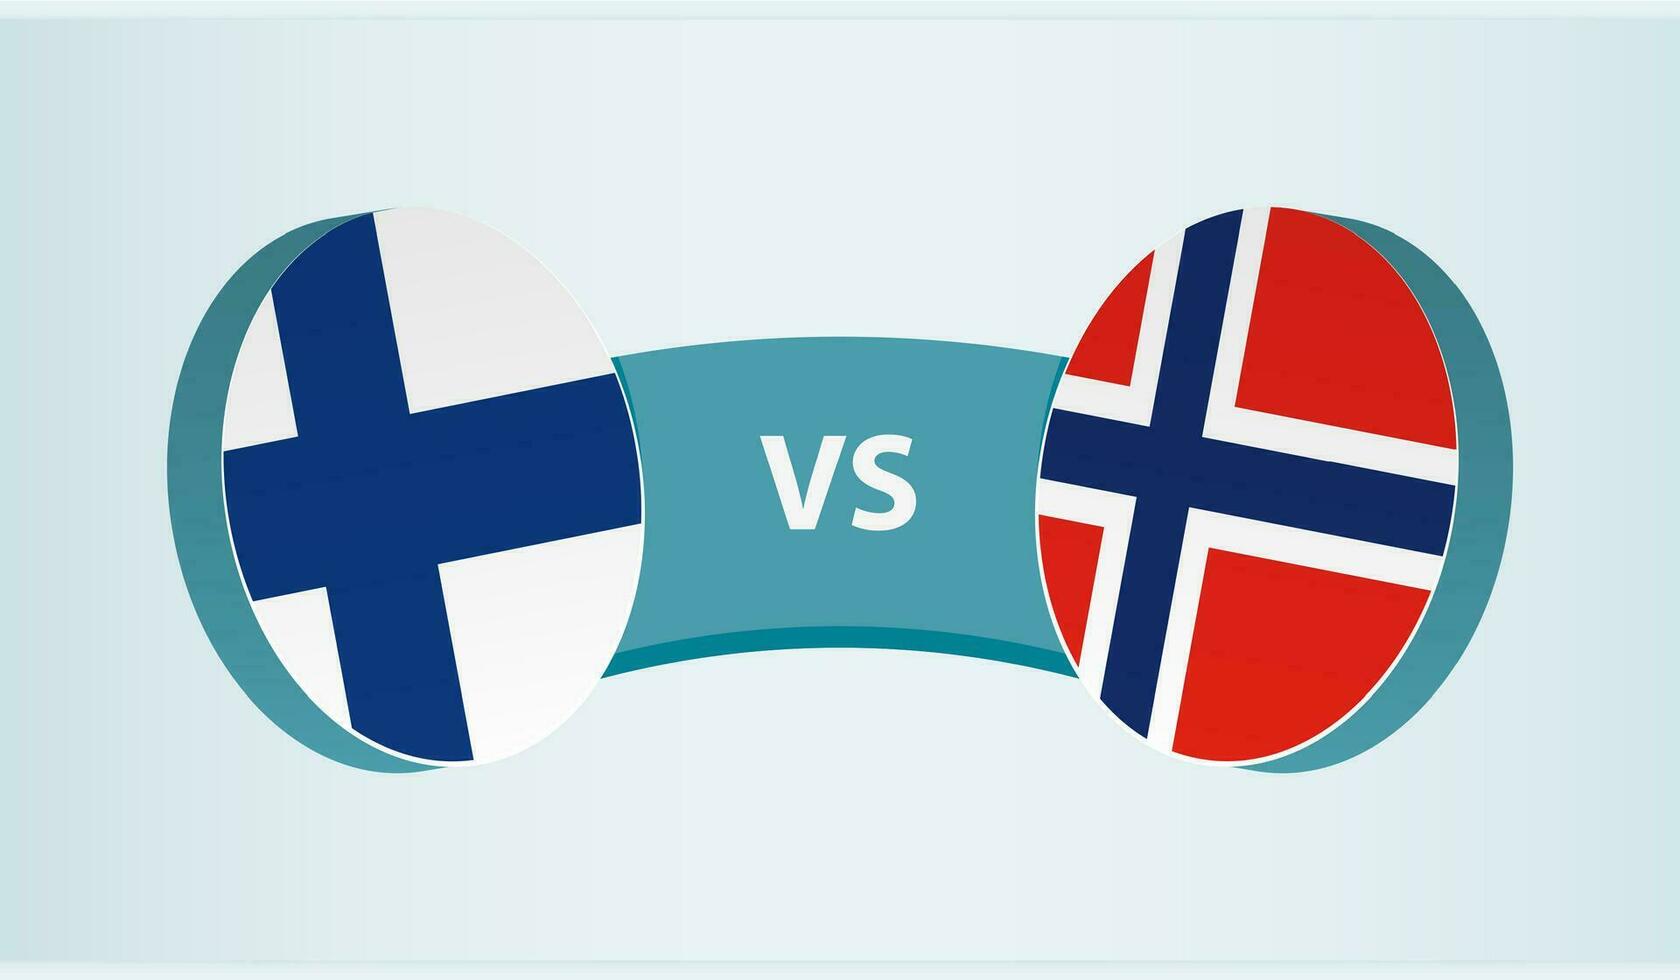 finland mot norge, team sporter konkurrens begrepp. vektor